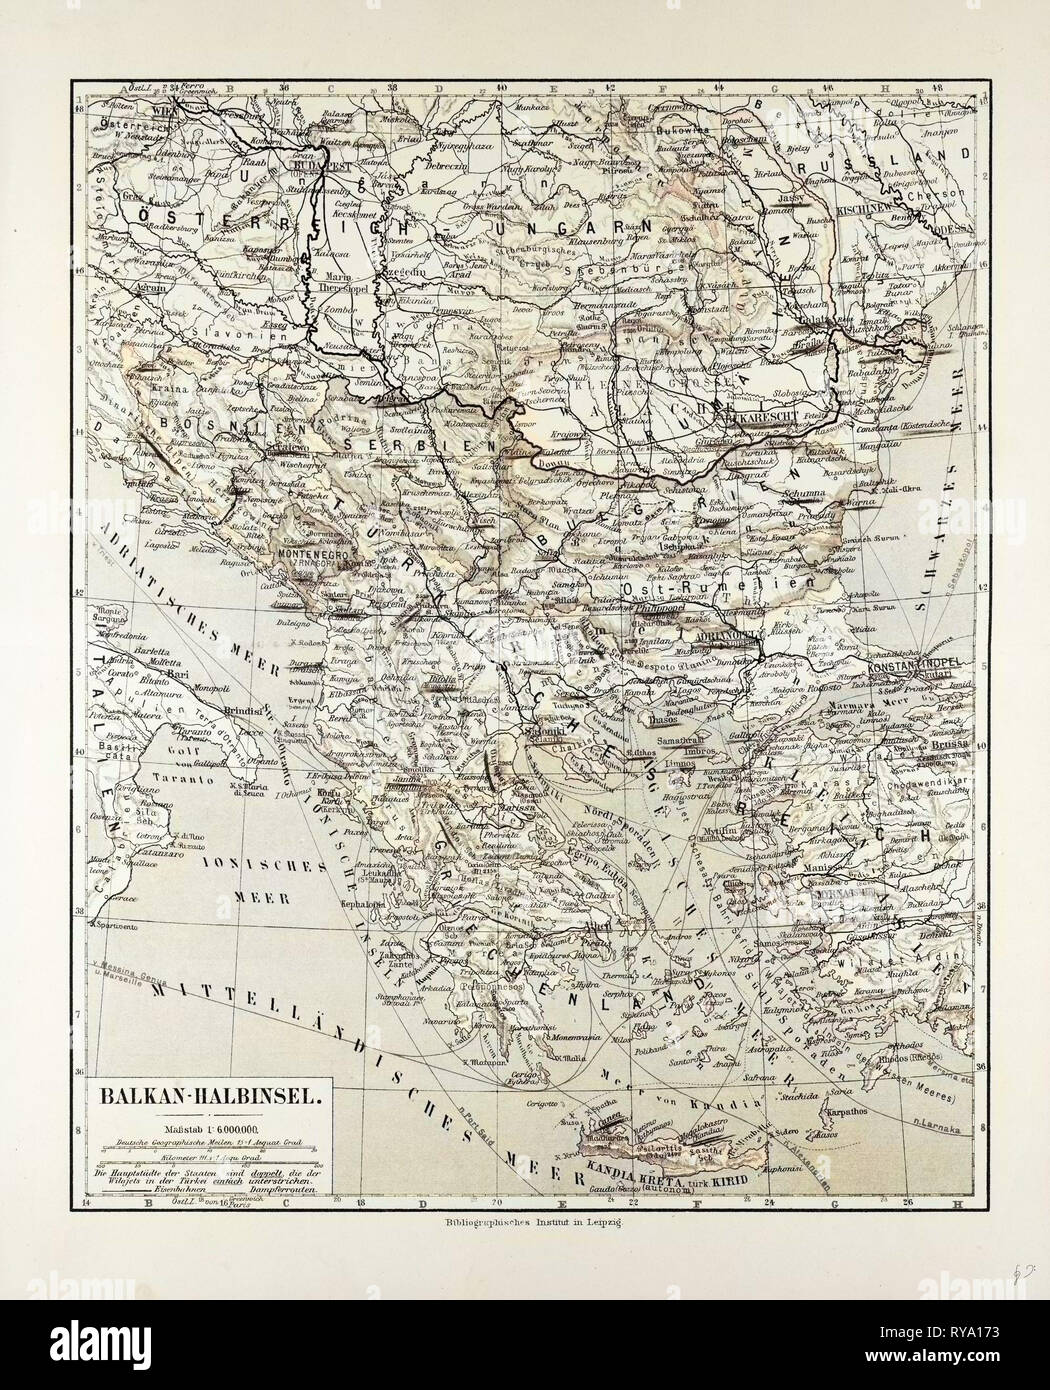 Map of Austria-Hungary Greece Serbia Bosnia and Herzegovina Romania Bulgaria Macedonia Montenegro and Crete Albania Bulgaria 1899 Stock Photo